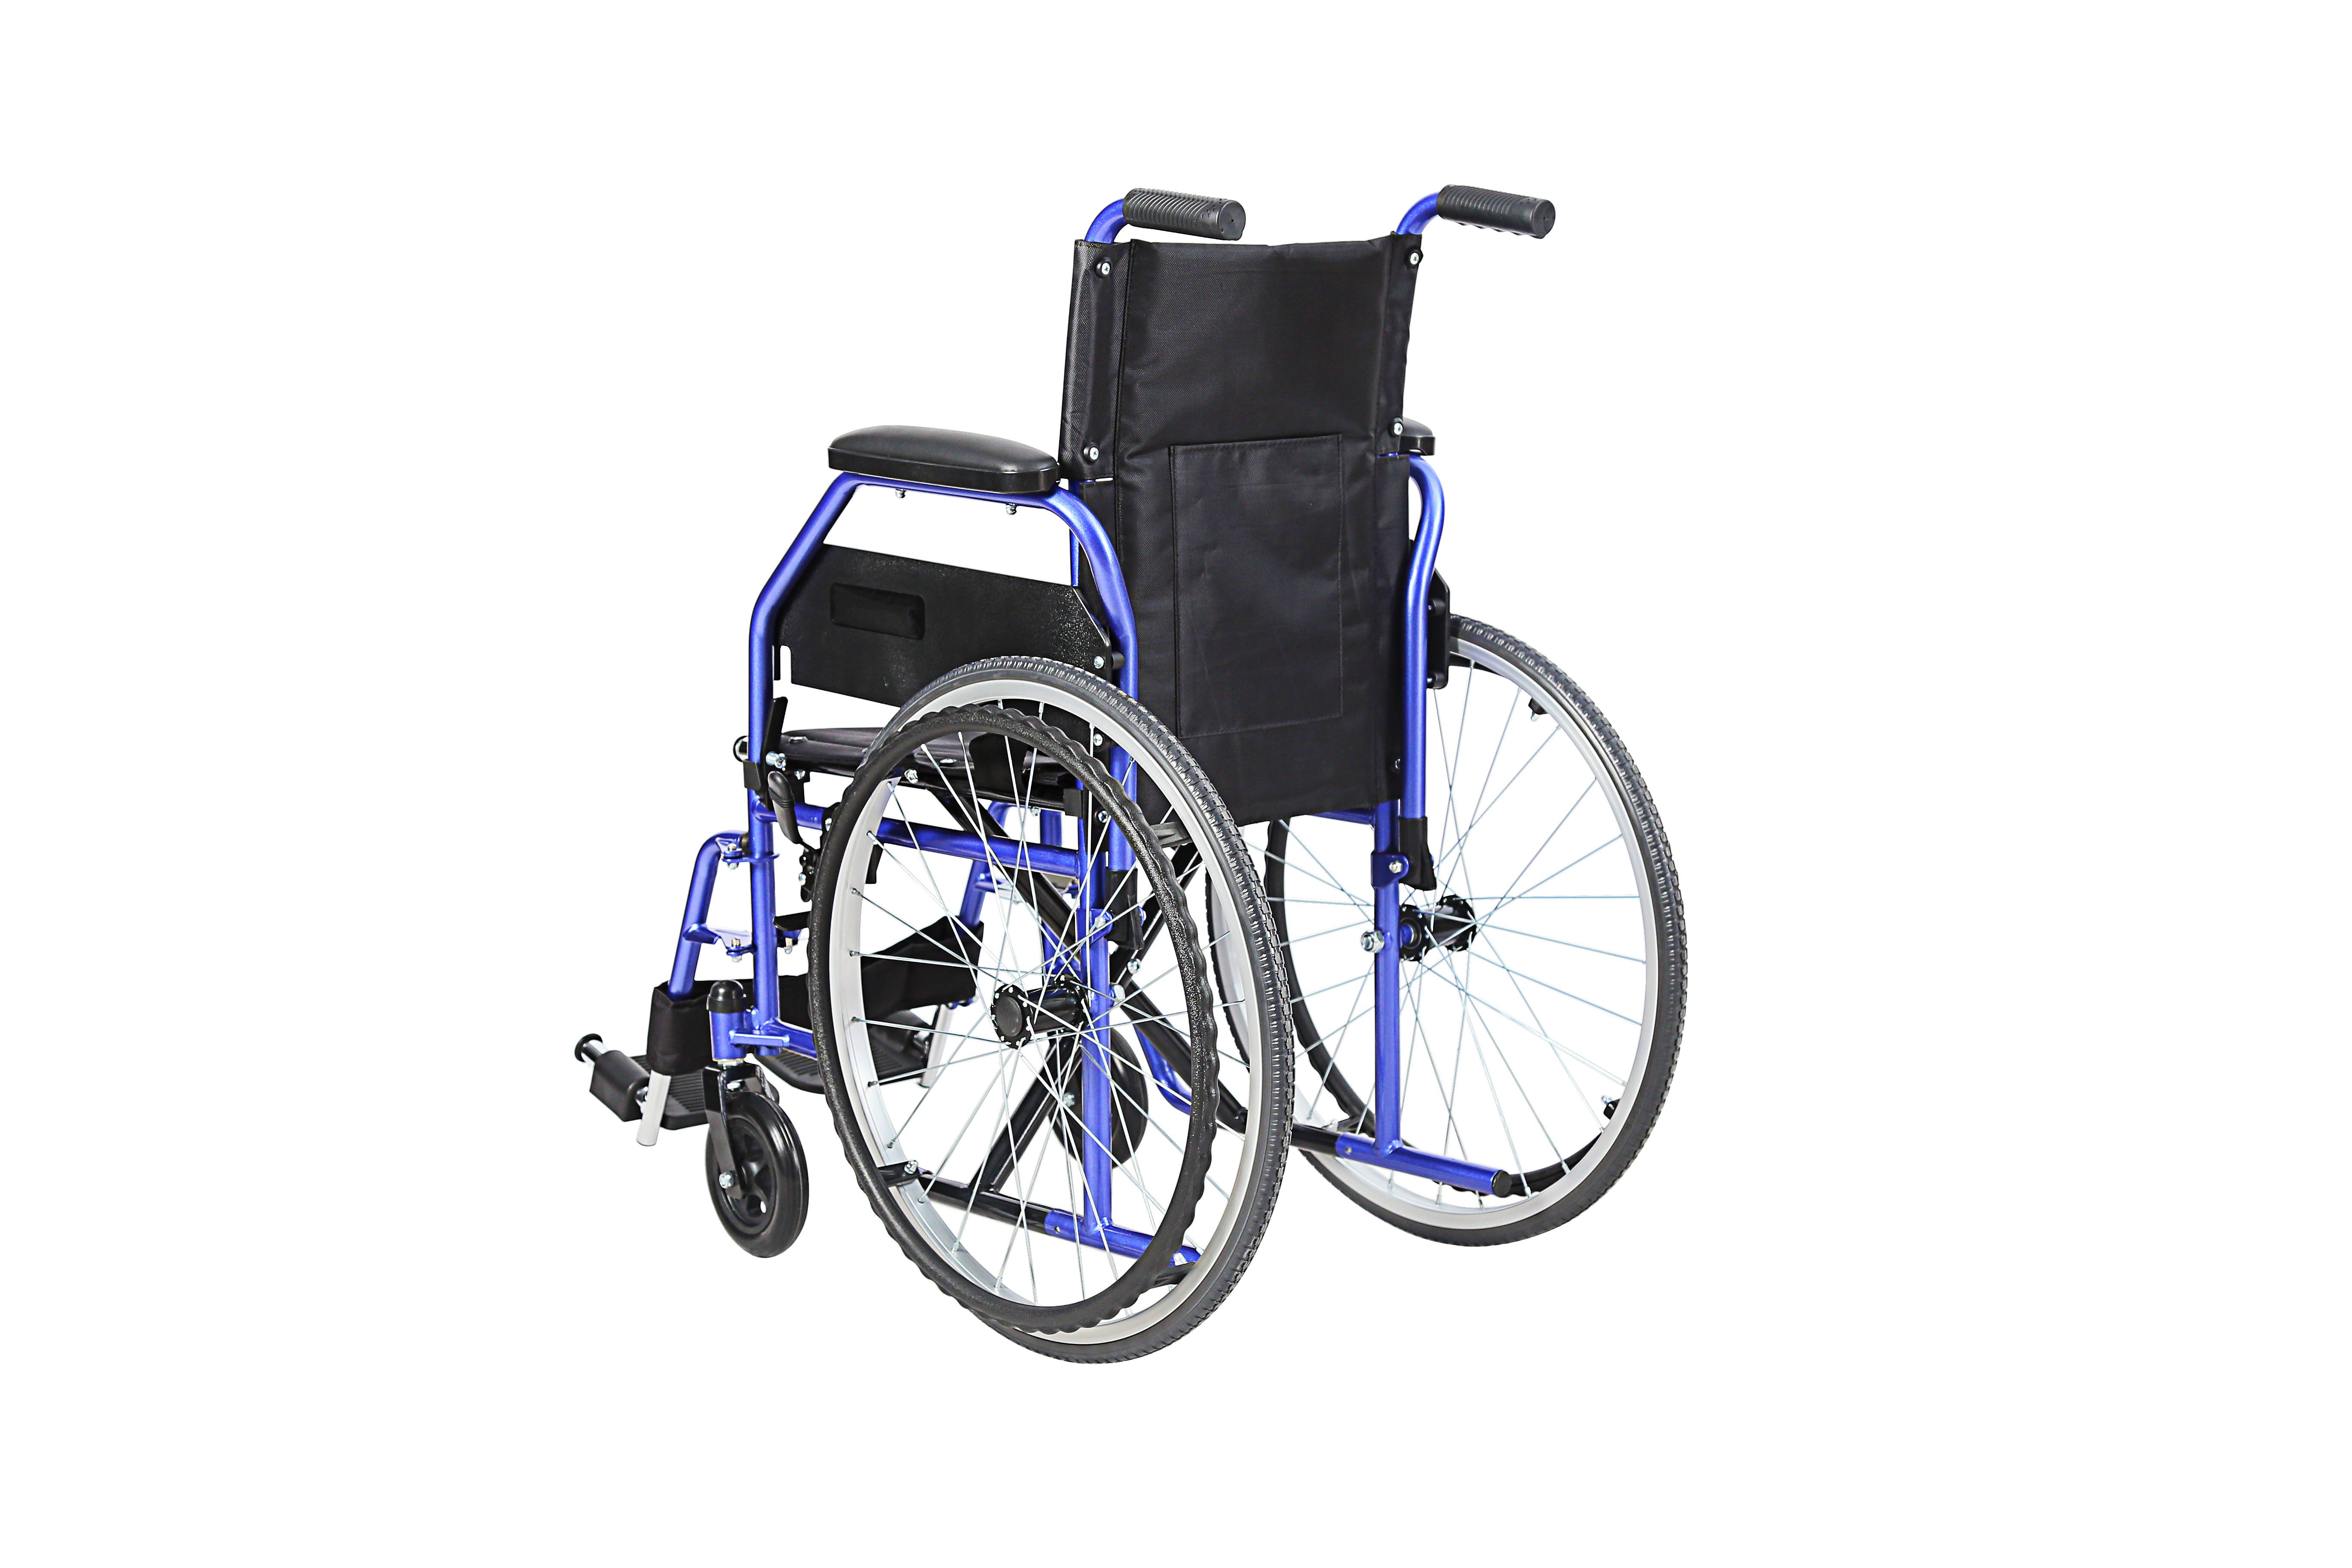 KF-SYIV-007 Leichte faltbare manuelle Rollstuhl-Neigungs-Armlehne für Kinder